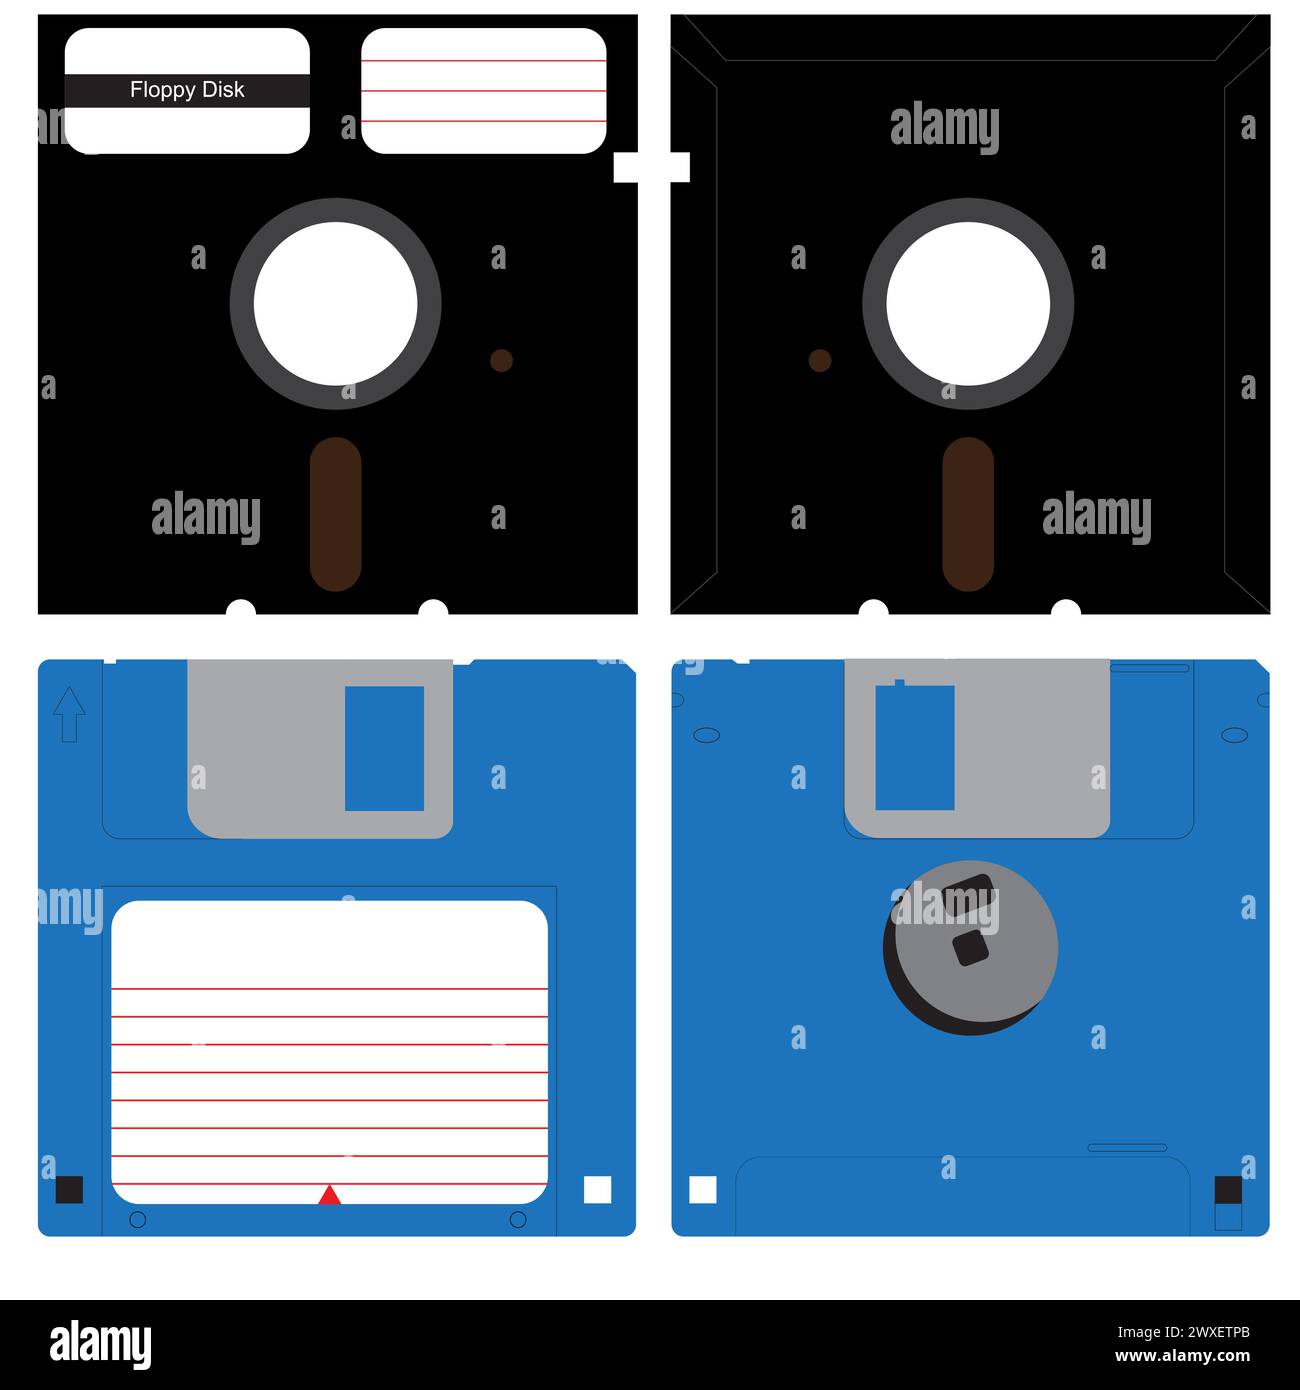 Set di dischi floppy in entrambe le versioni da 3,5 e 5,25 pollici, spazio di archiviazione su floppy disk da 3 ½ e 5,25, supporti di archiviazione retro Illustrazione Vettoriale